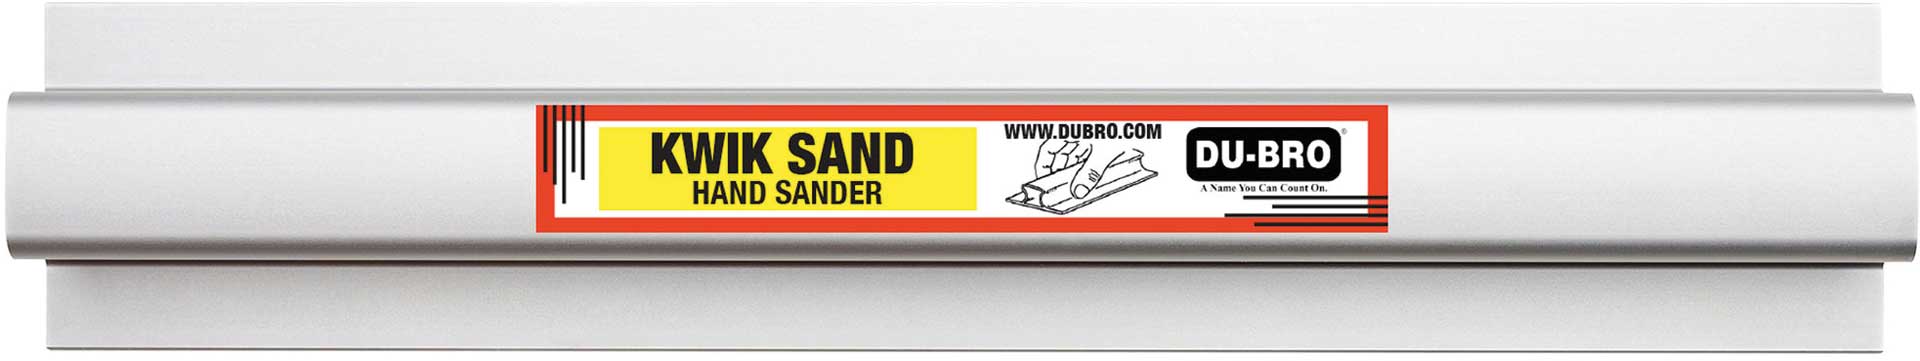 DUBRO Kwik Hand Sander 558x63mm (22"x2,5") mitje 1x P80/150/220 Schleifpapier, Schleifblock, Schleifleiste, Alu